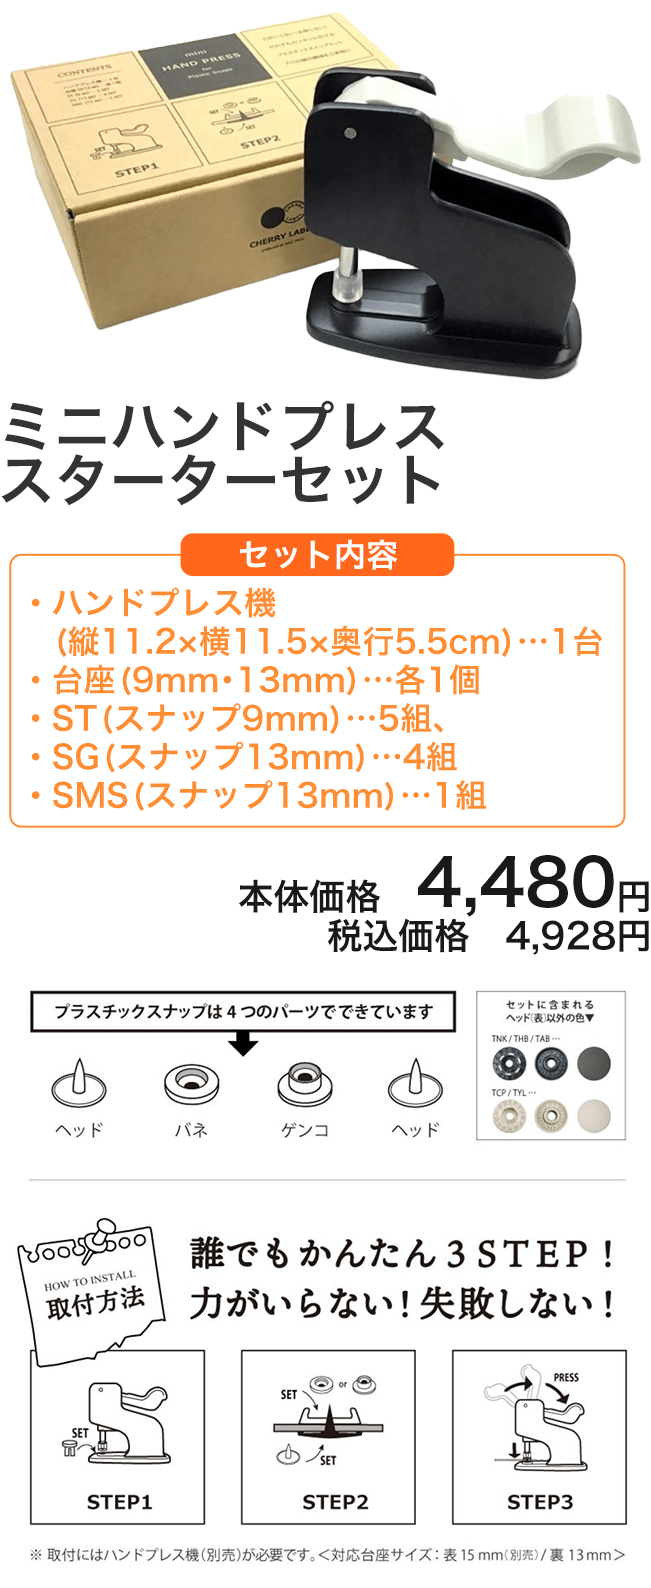 ミニハンドプレス スターターセット セット内容:ハンドプレス機（ 縦11.2×横11.5×奥行5.5ｃｍ）…1台/台座（9mm・13mm）…各1個/ST（スナップ9mm）…5組、SG（スナップ13mm）…4組/SMS（スナップ13mm）…1組 本体価格 4,980円 税込価格 5,478円